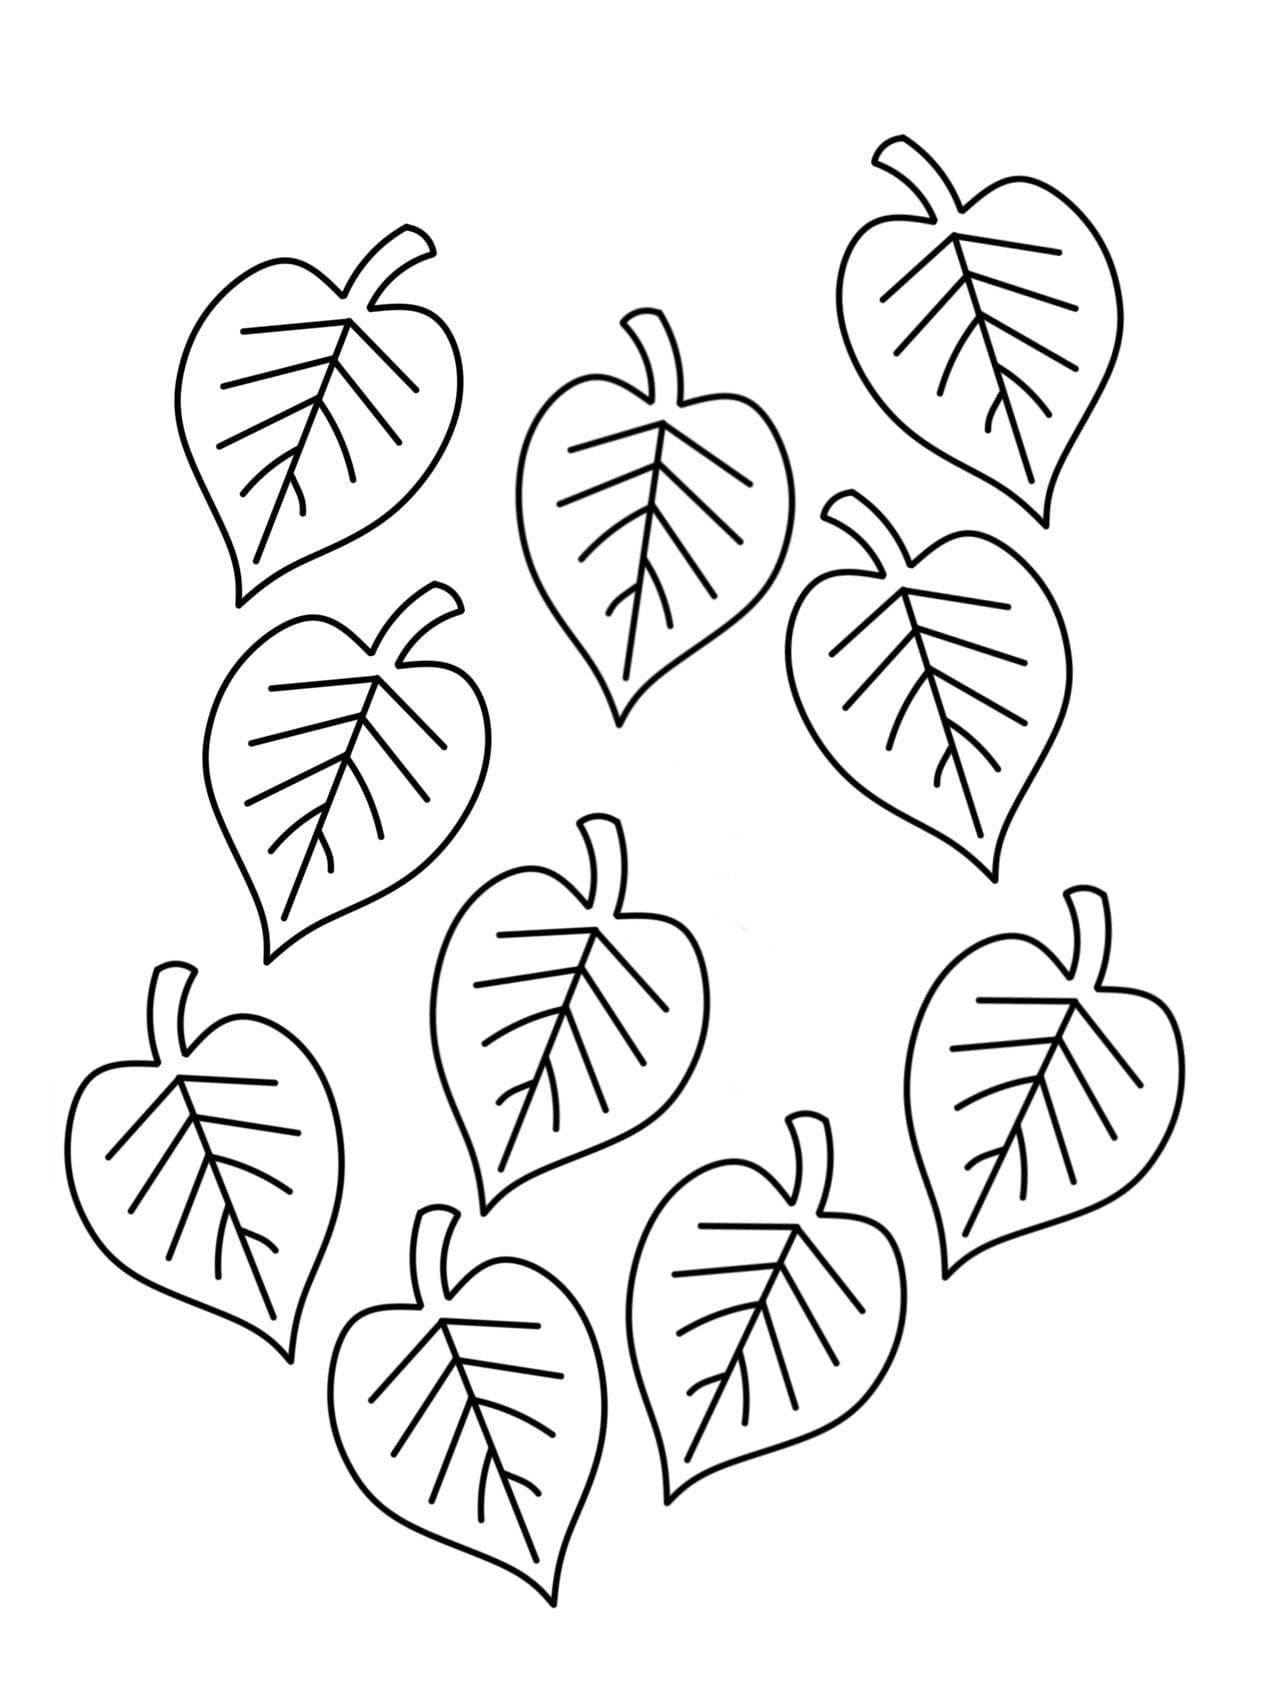 Раскраска лист дерева сумах